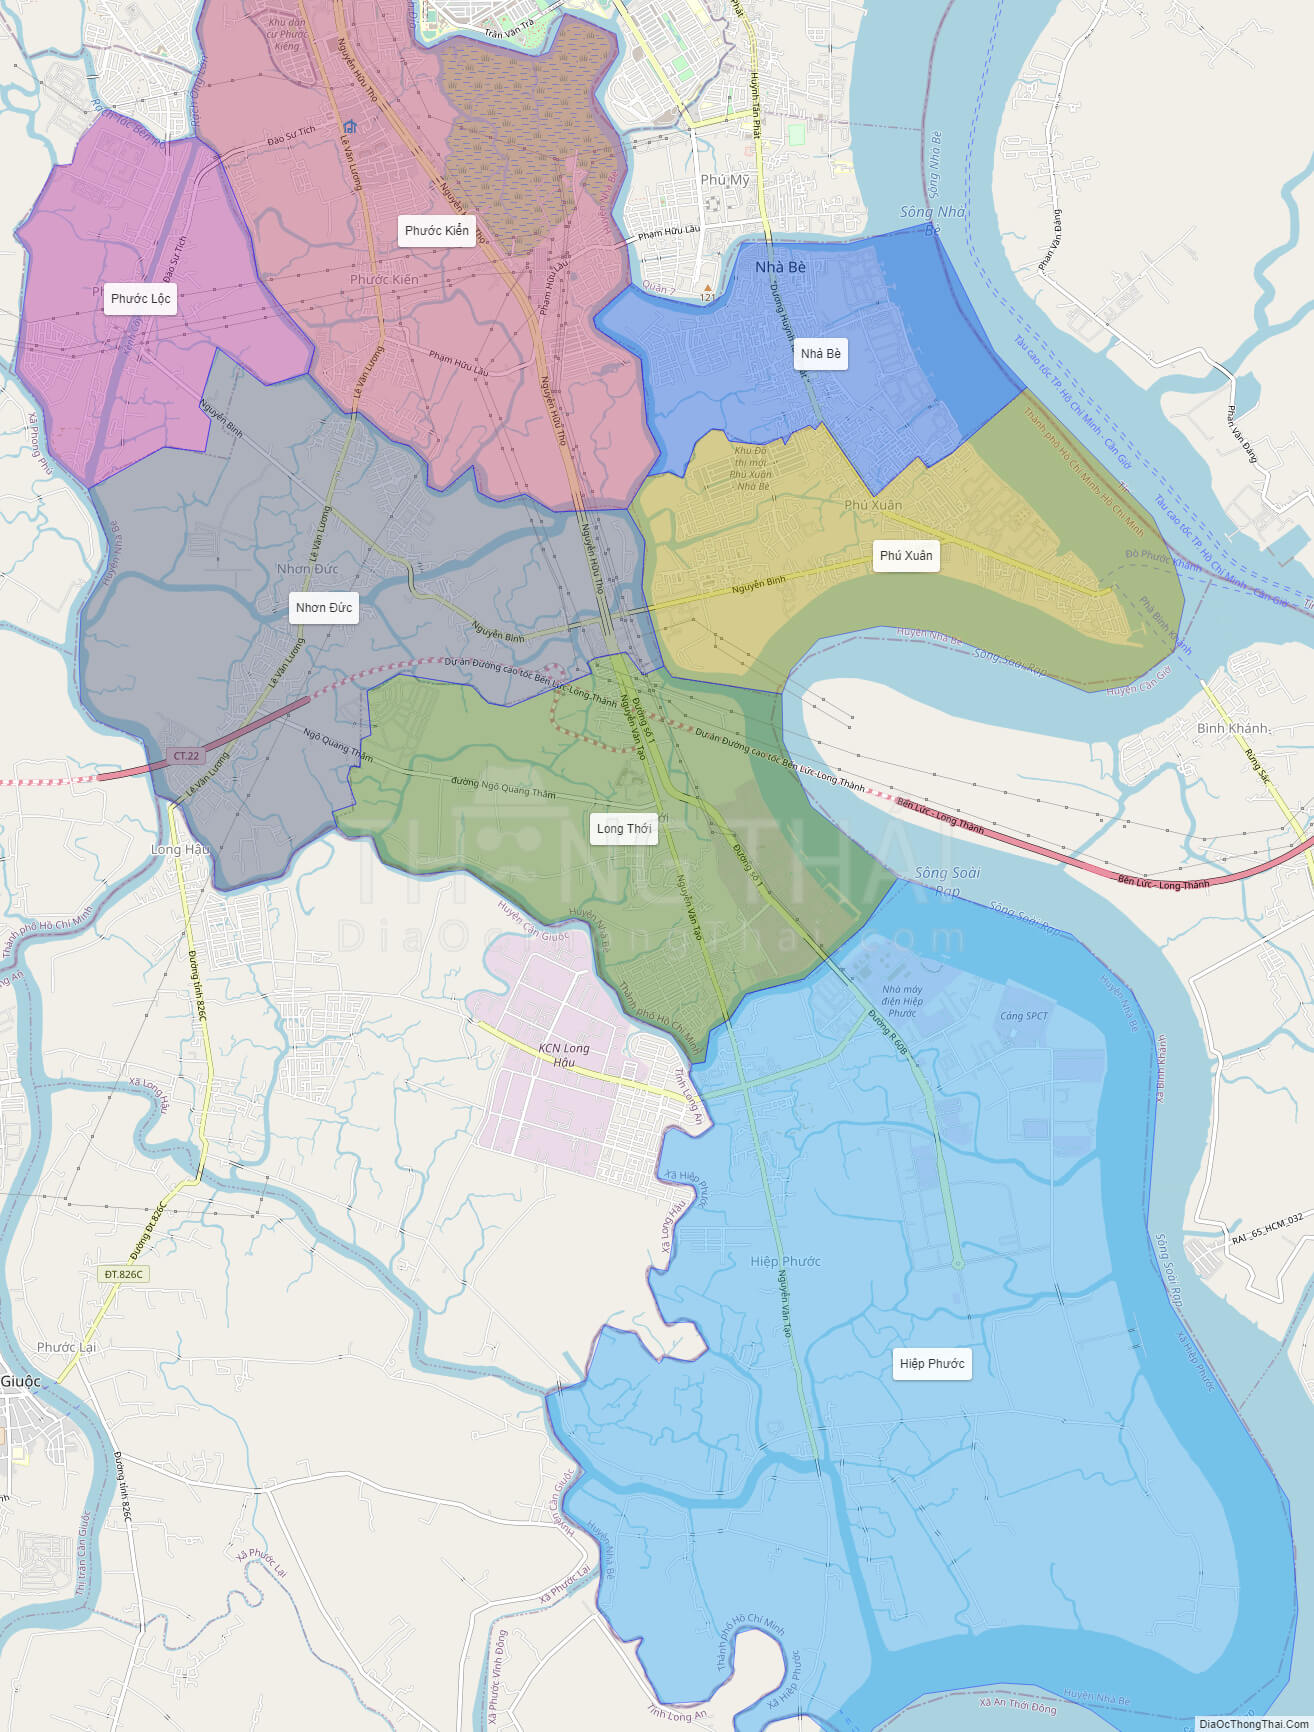 Bản đồ huyện Nhà Bè năm 2024 cho thấy sự phát triển đầy tiềm năng của thành phố Hồ Chí Minh. Các điểm đến mới sẽ khiến bạn say mê, tìm hiểu văn hóa địa phương và thưởng thức ẩm thực độc đáo. Hãy truy cập hình ảnh để khám phá được những điều thú vị này.